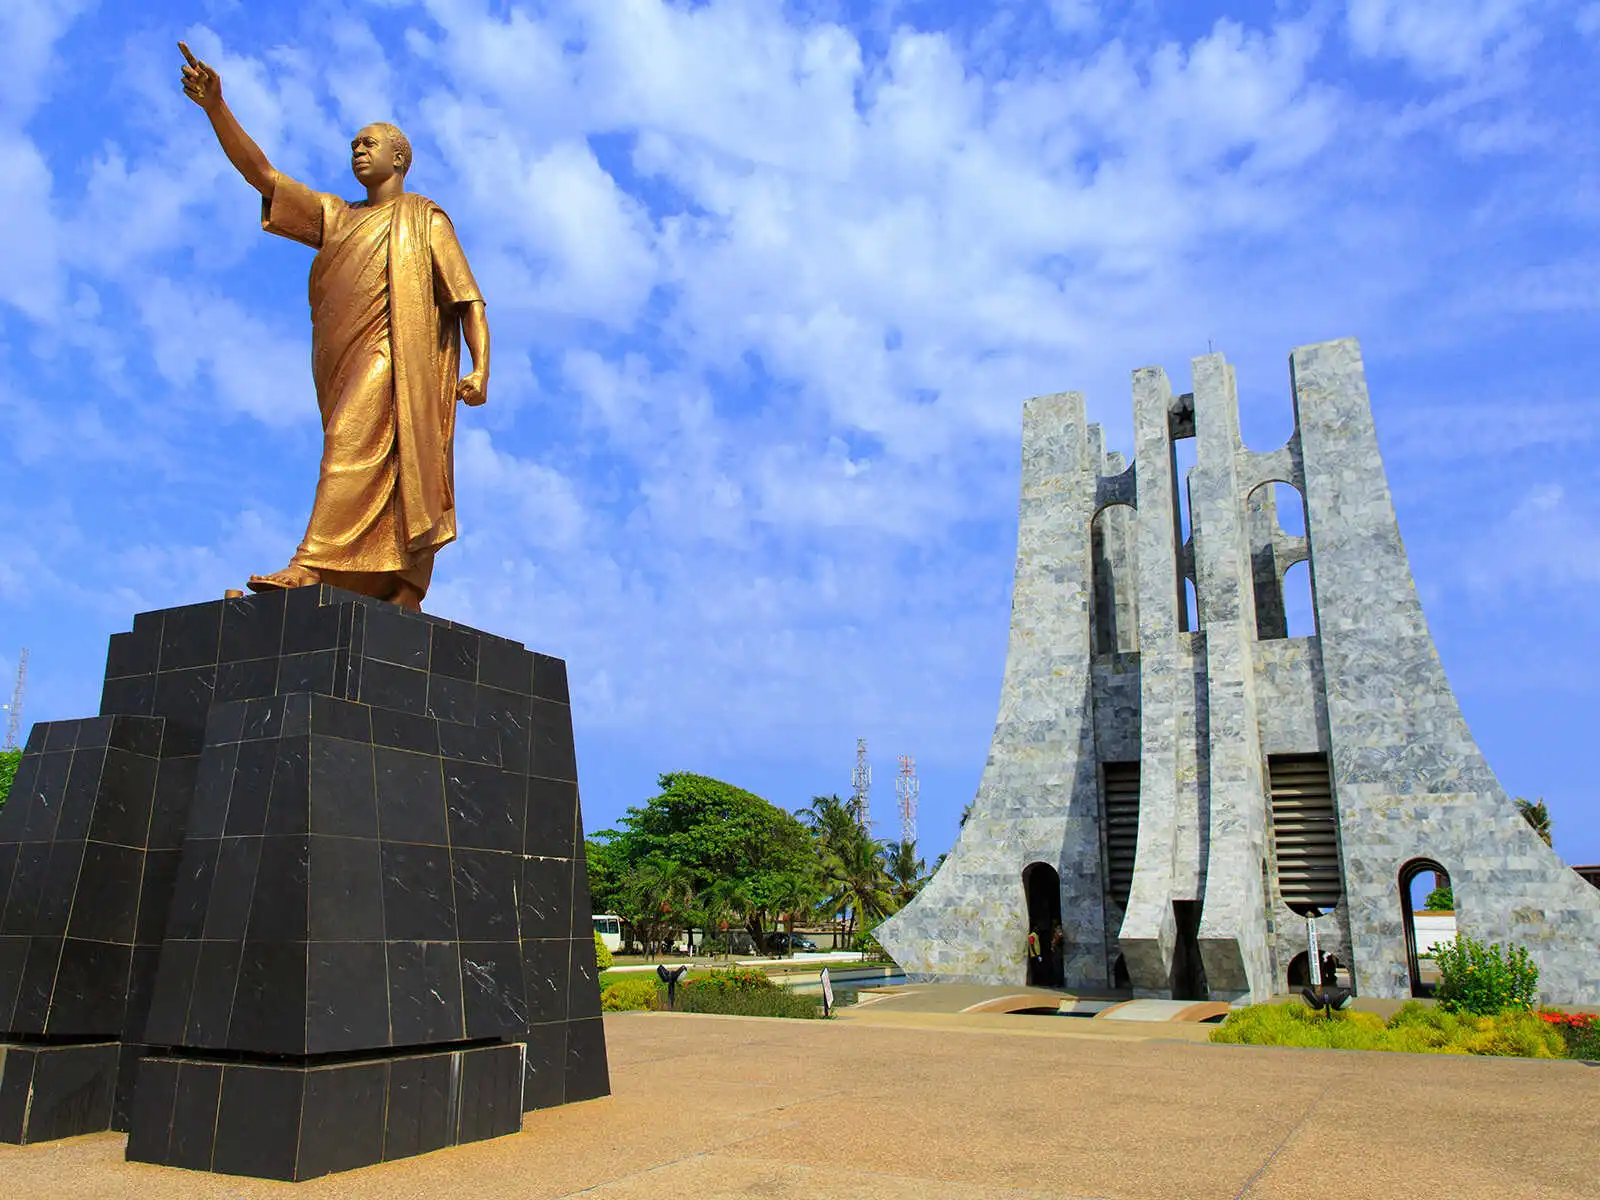 The Kwame Nkrumah Memorial Park